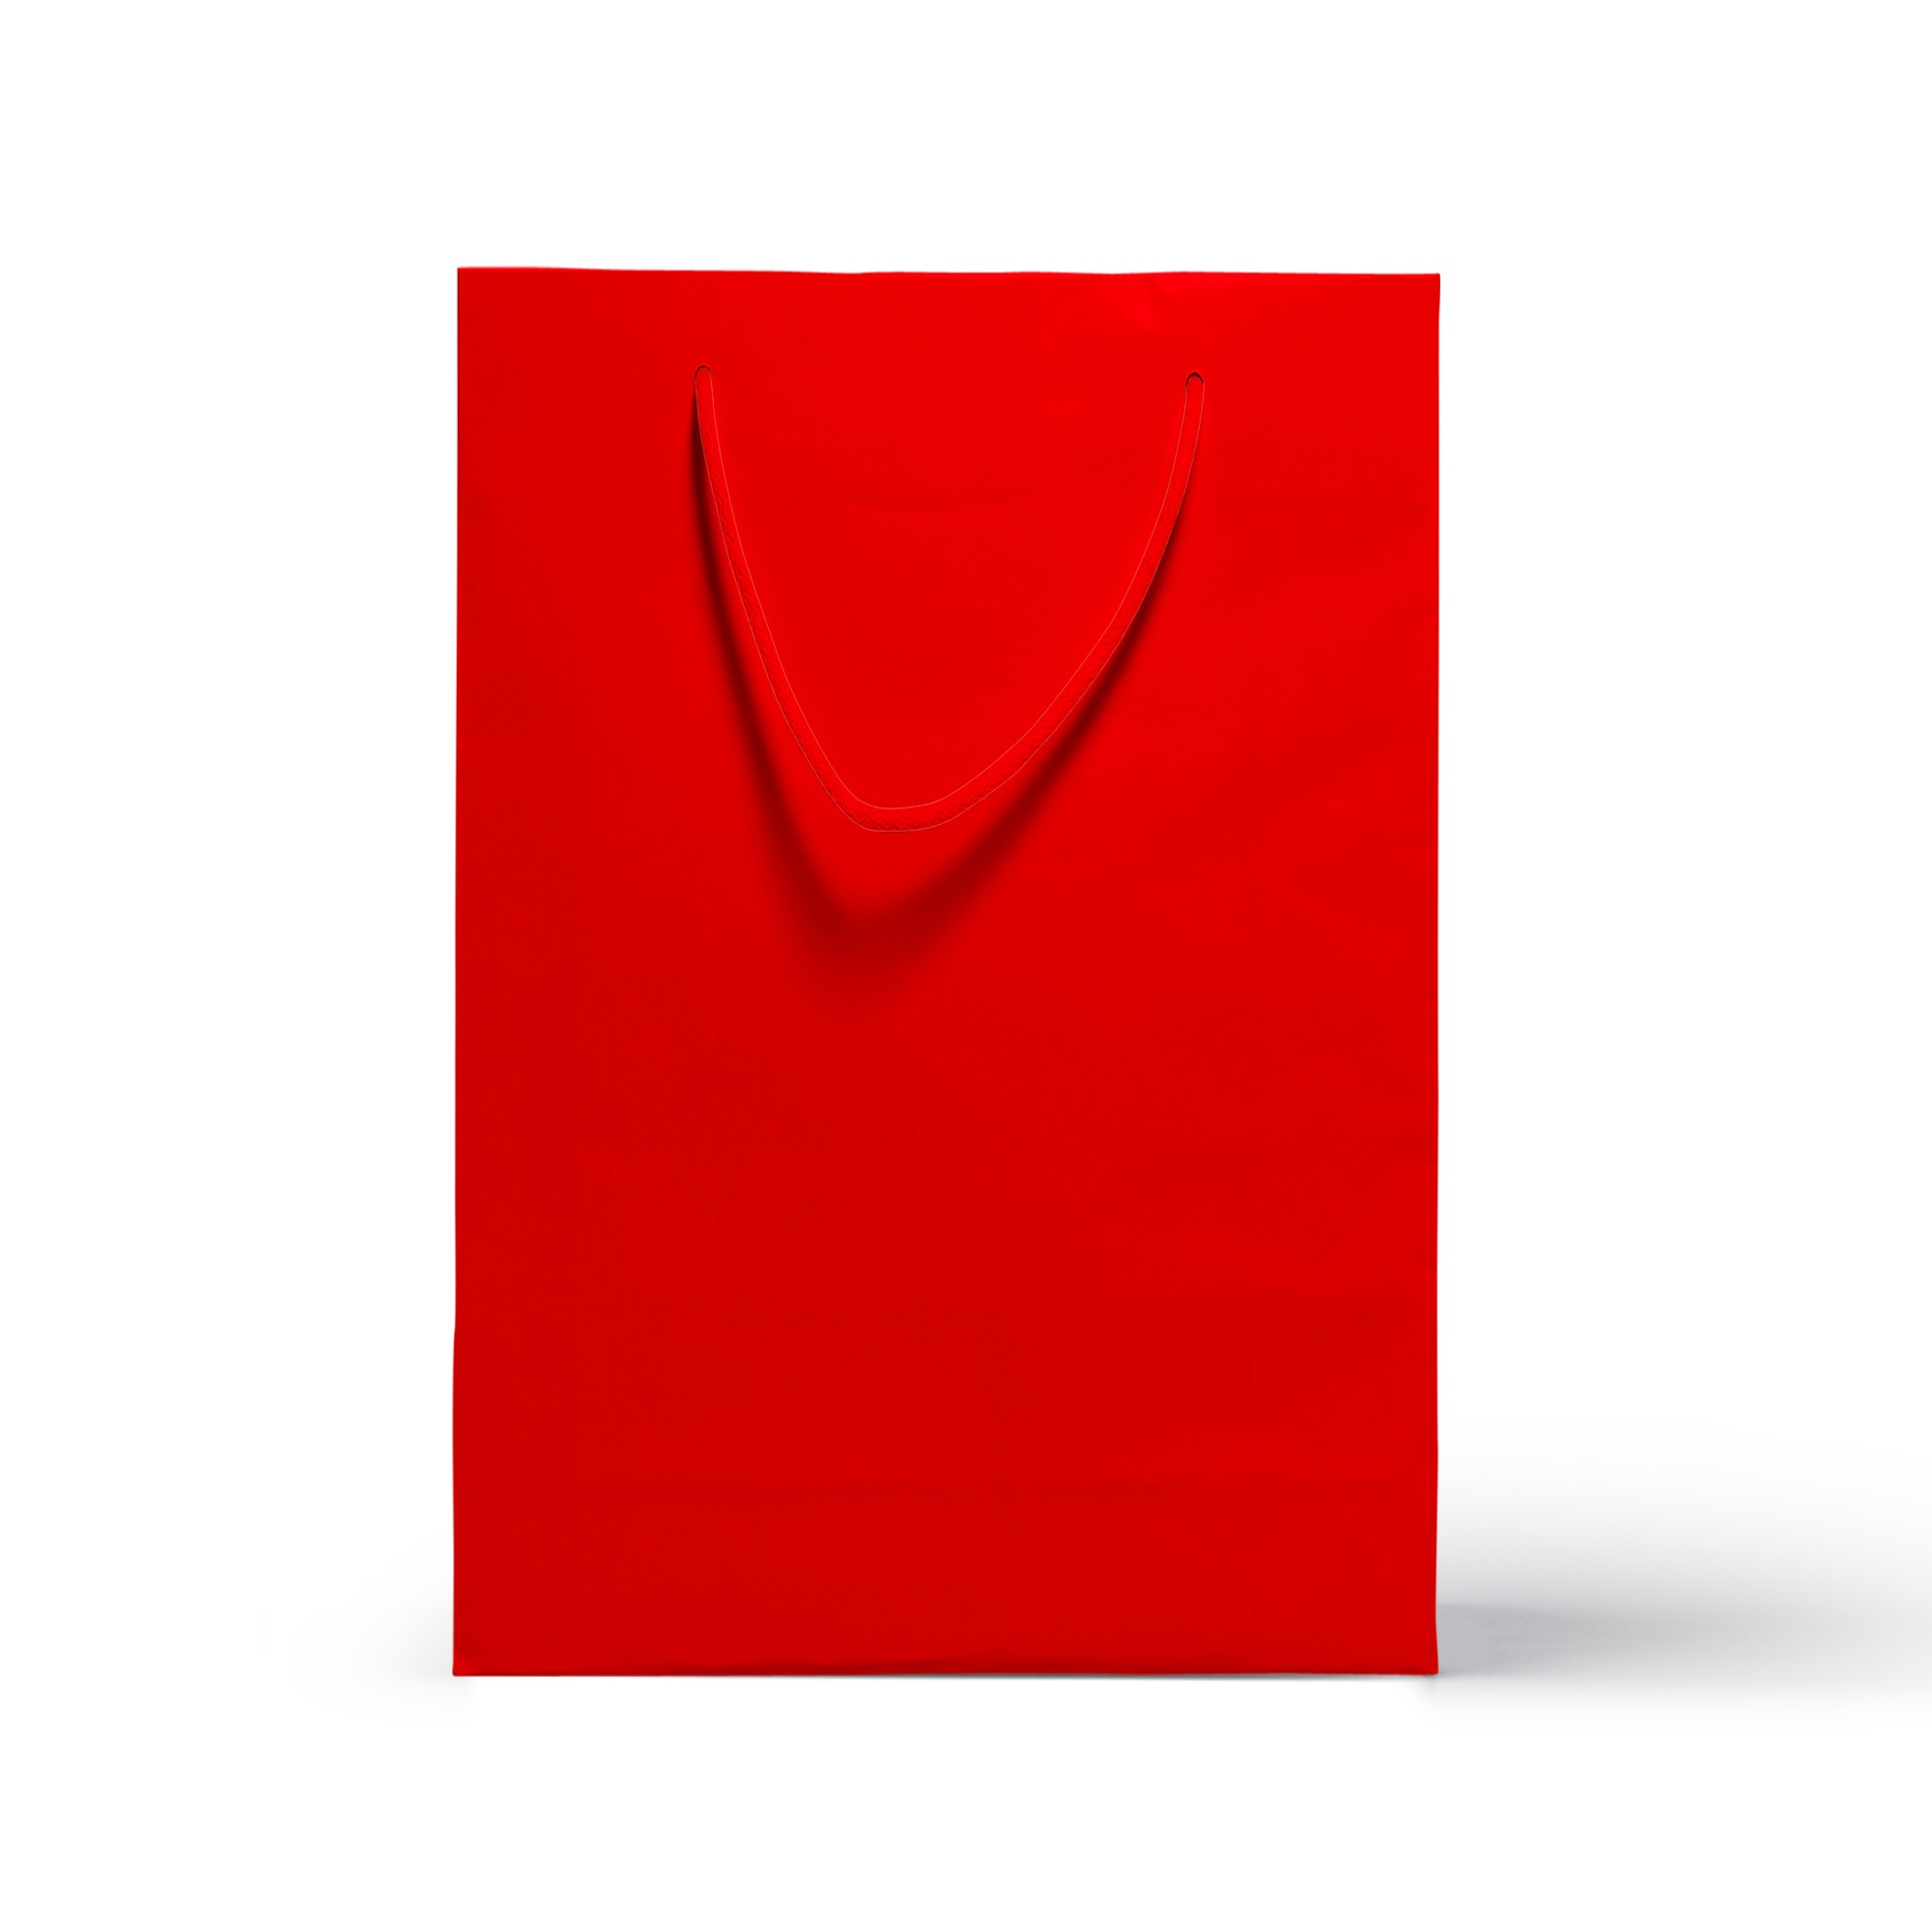 Renkli İpli Karton Çanta - Kırmızı 36cm x 25cm x 9cm - 1 Adet